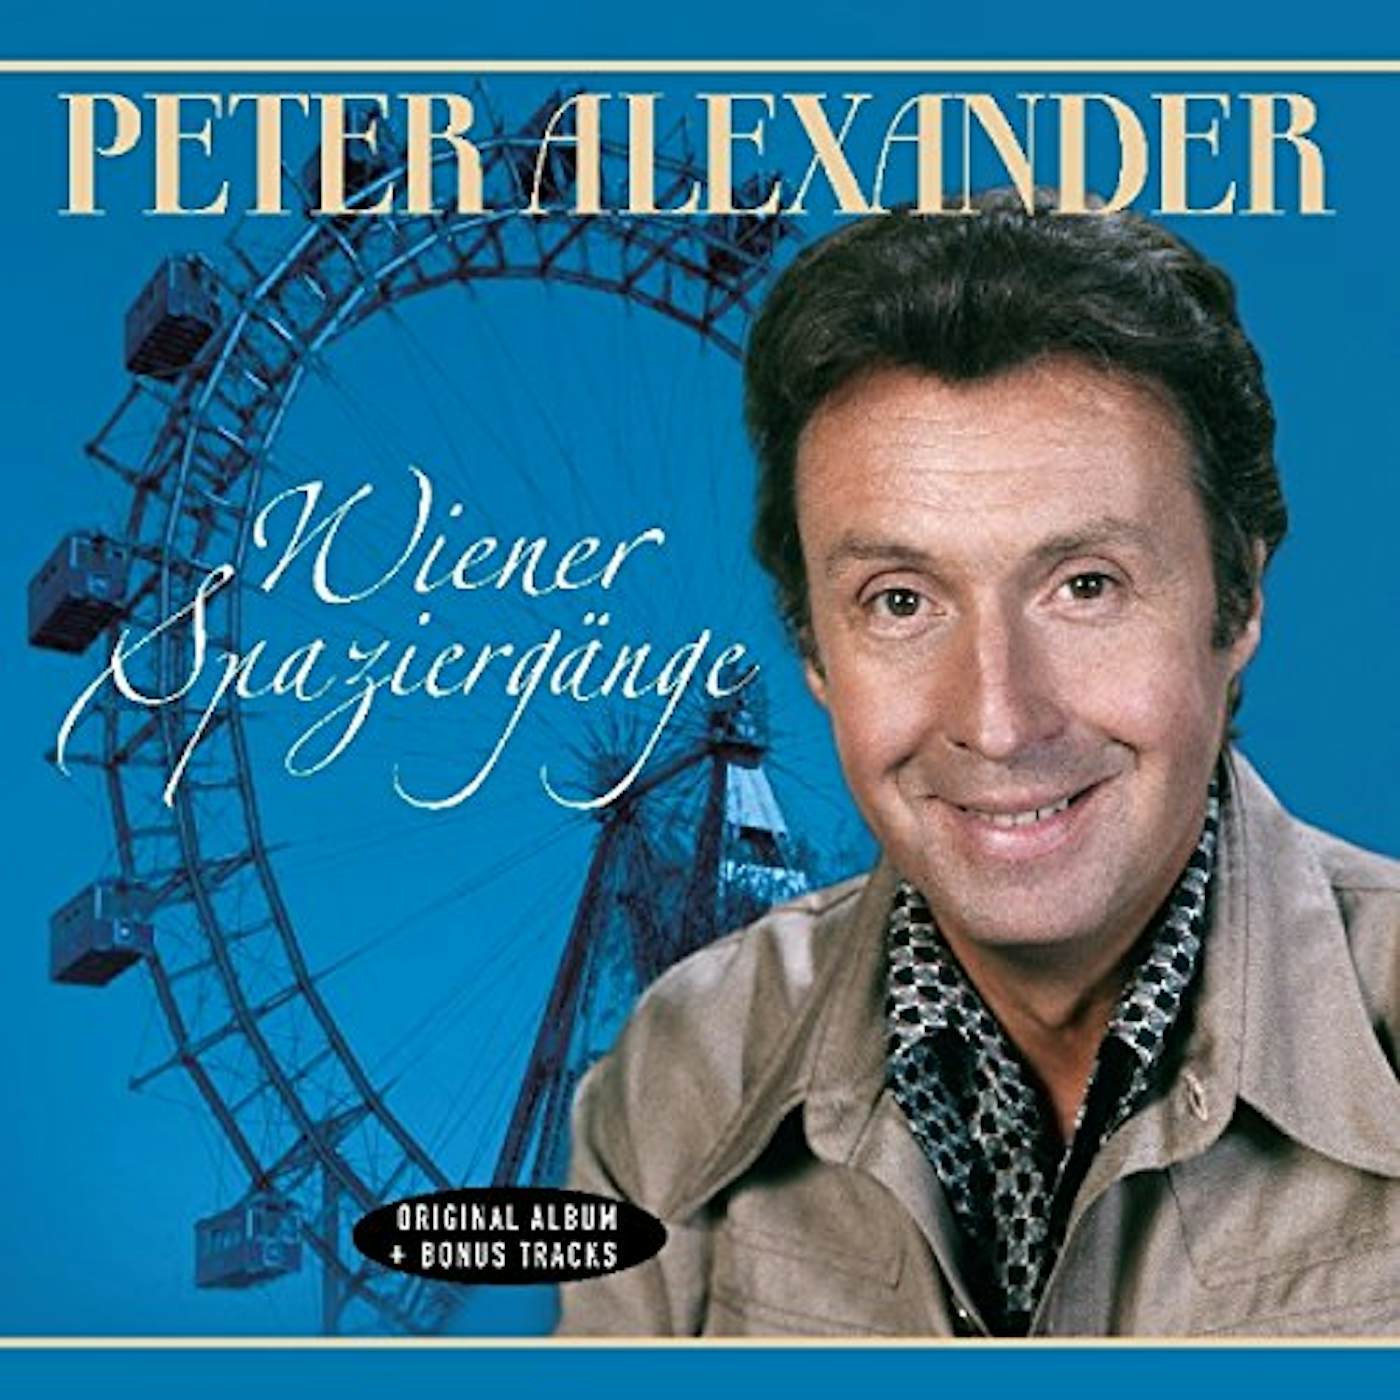 Peter Alexander WIENER SPAZIERGANGE Vinyl Record